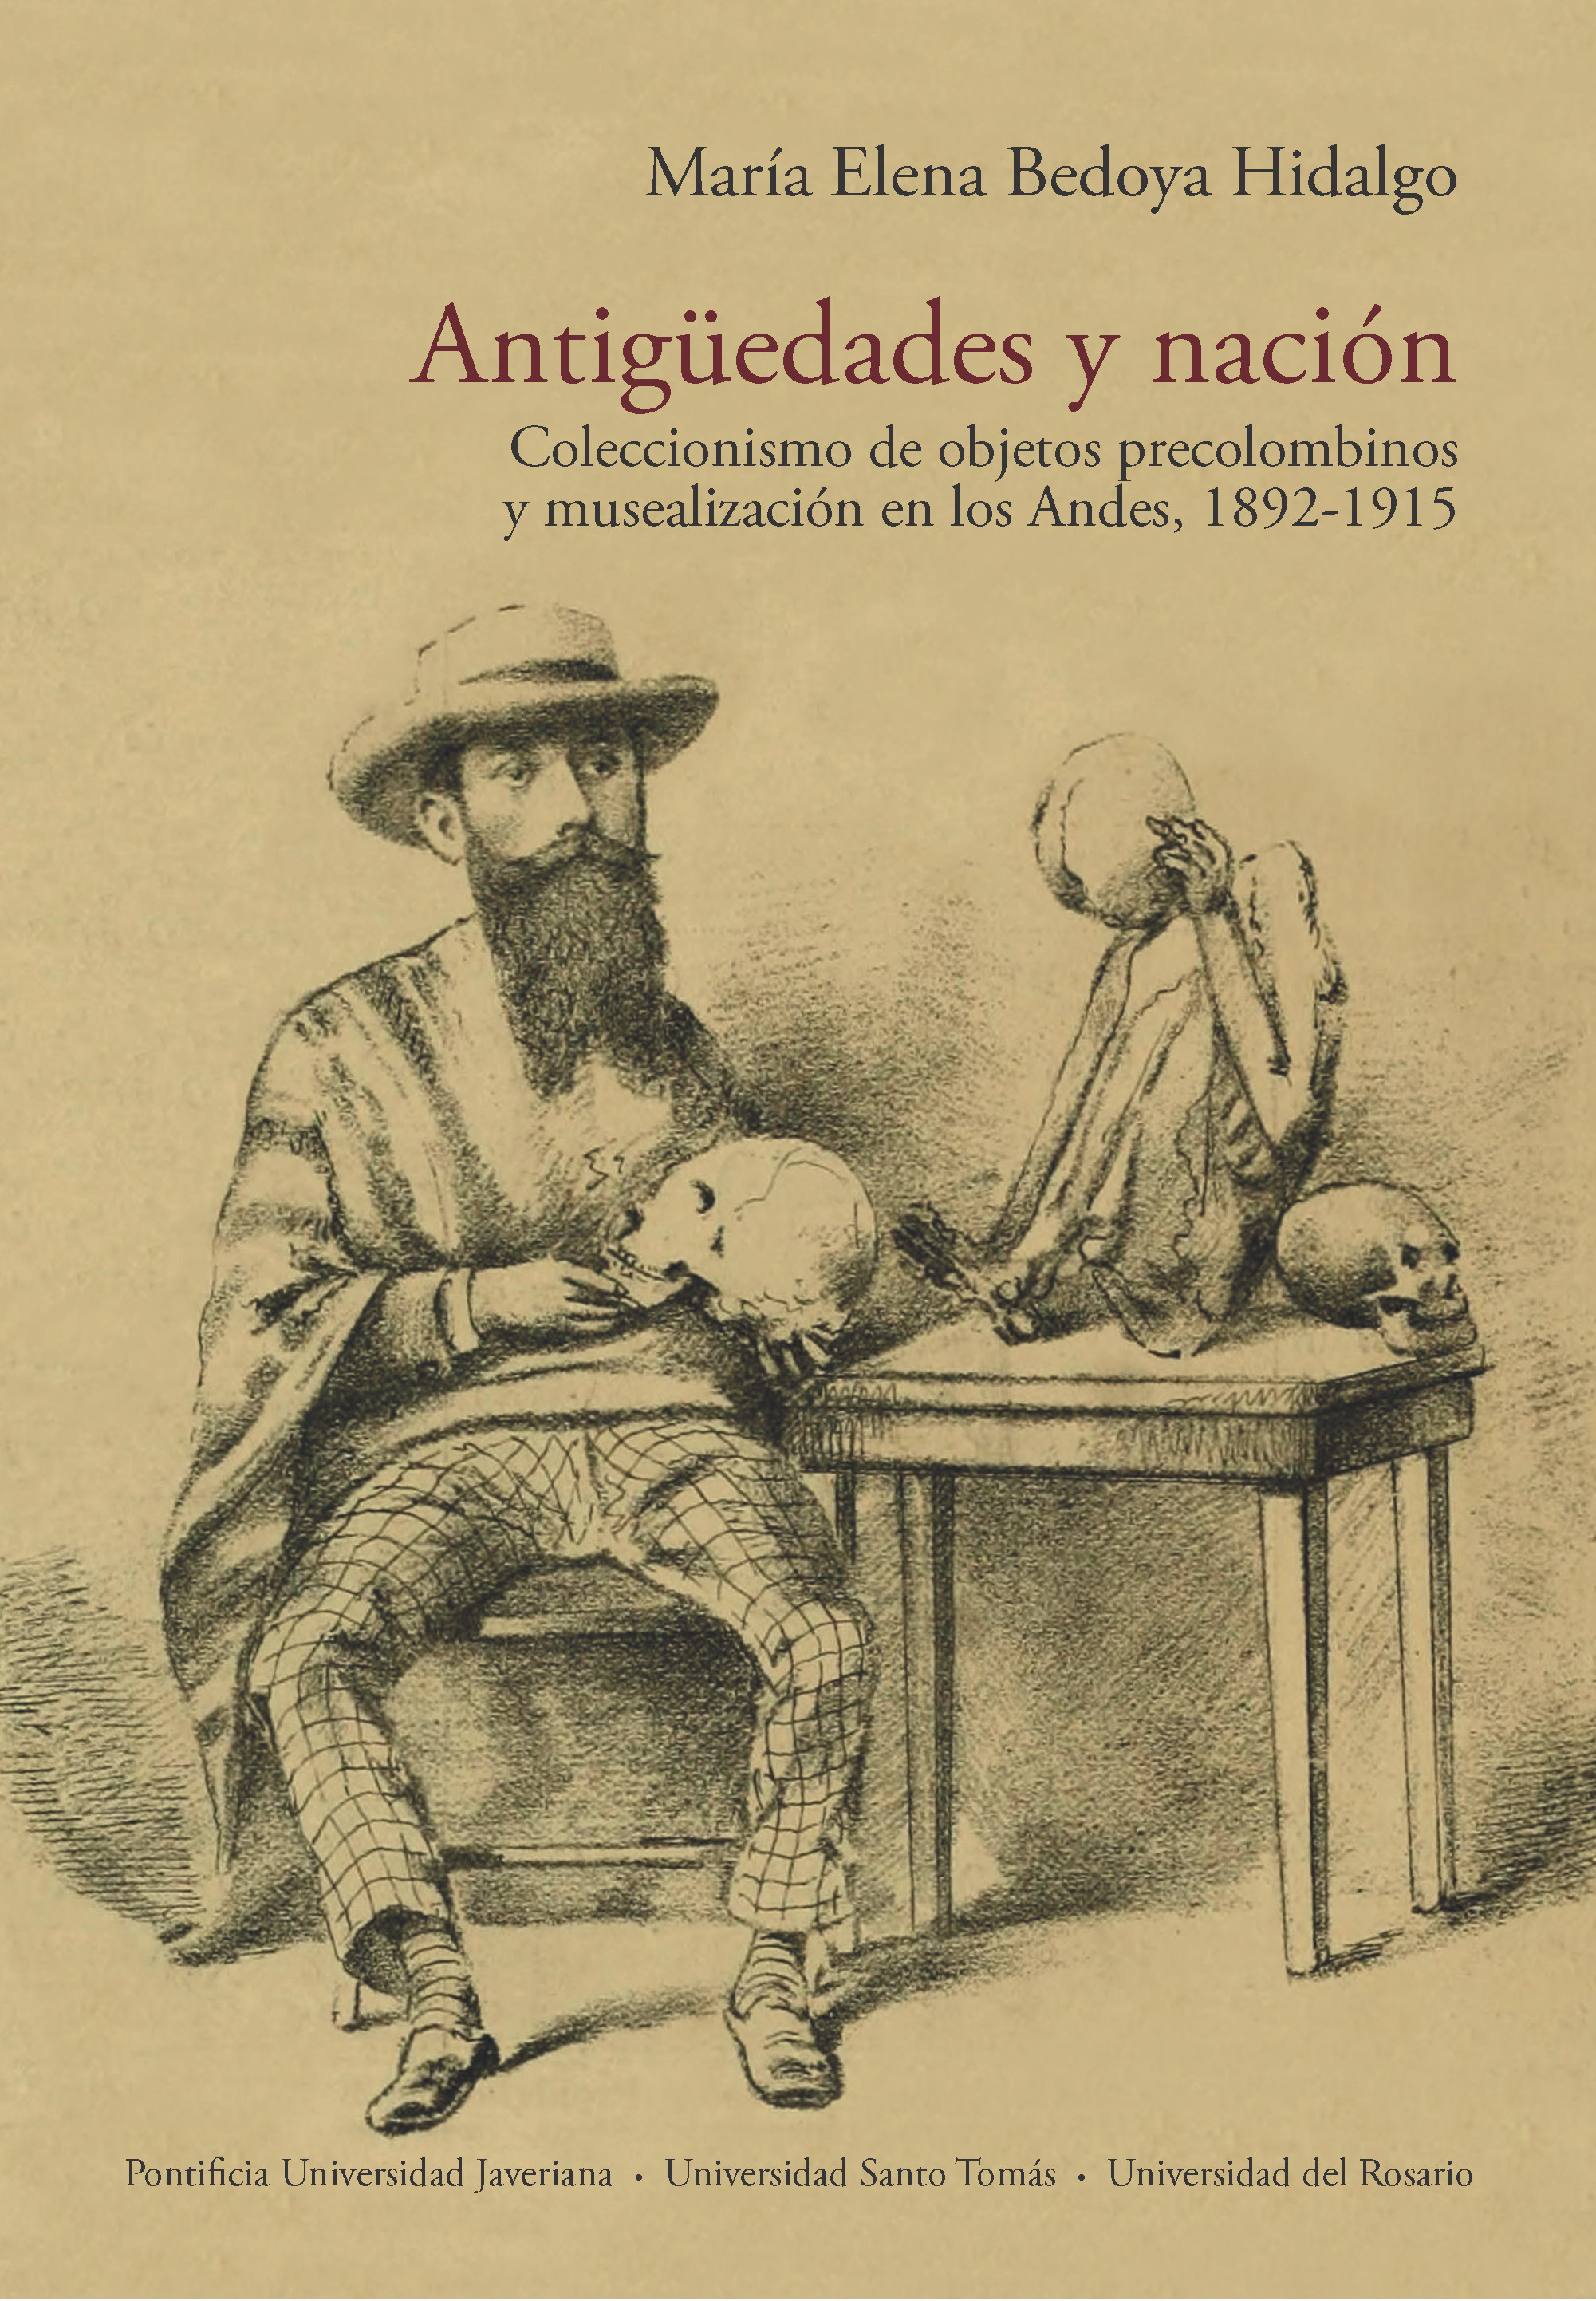 Imagen de portada del libro Antigüedades y nación